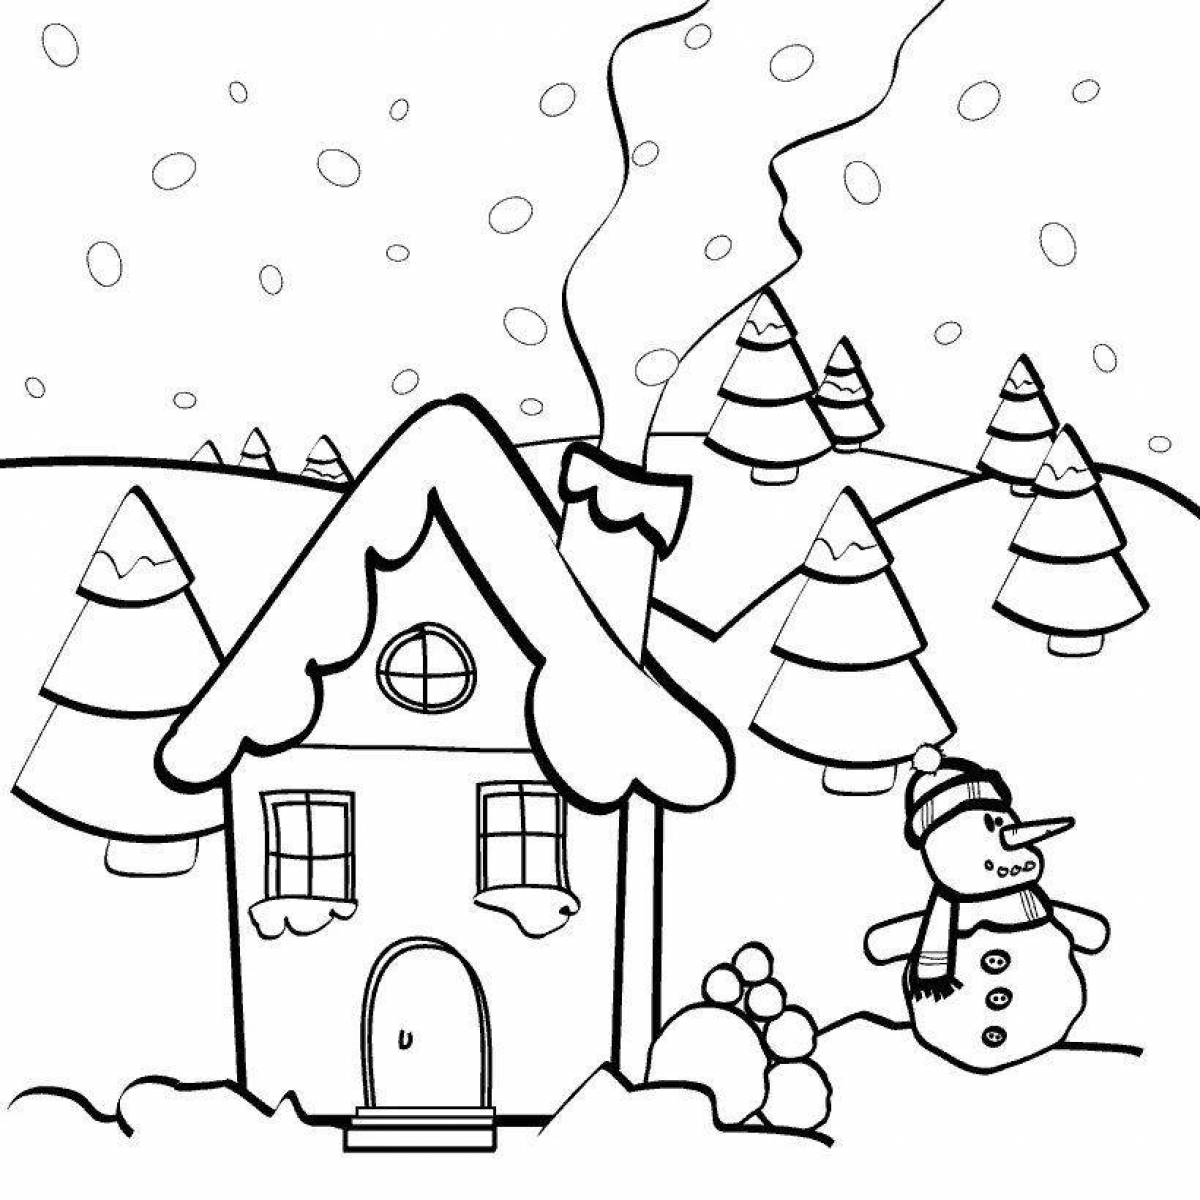 Снежный домик #2